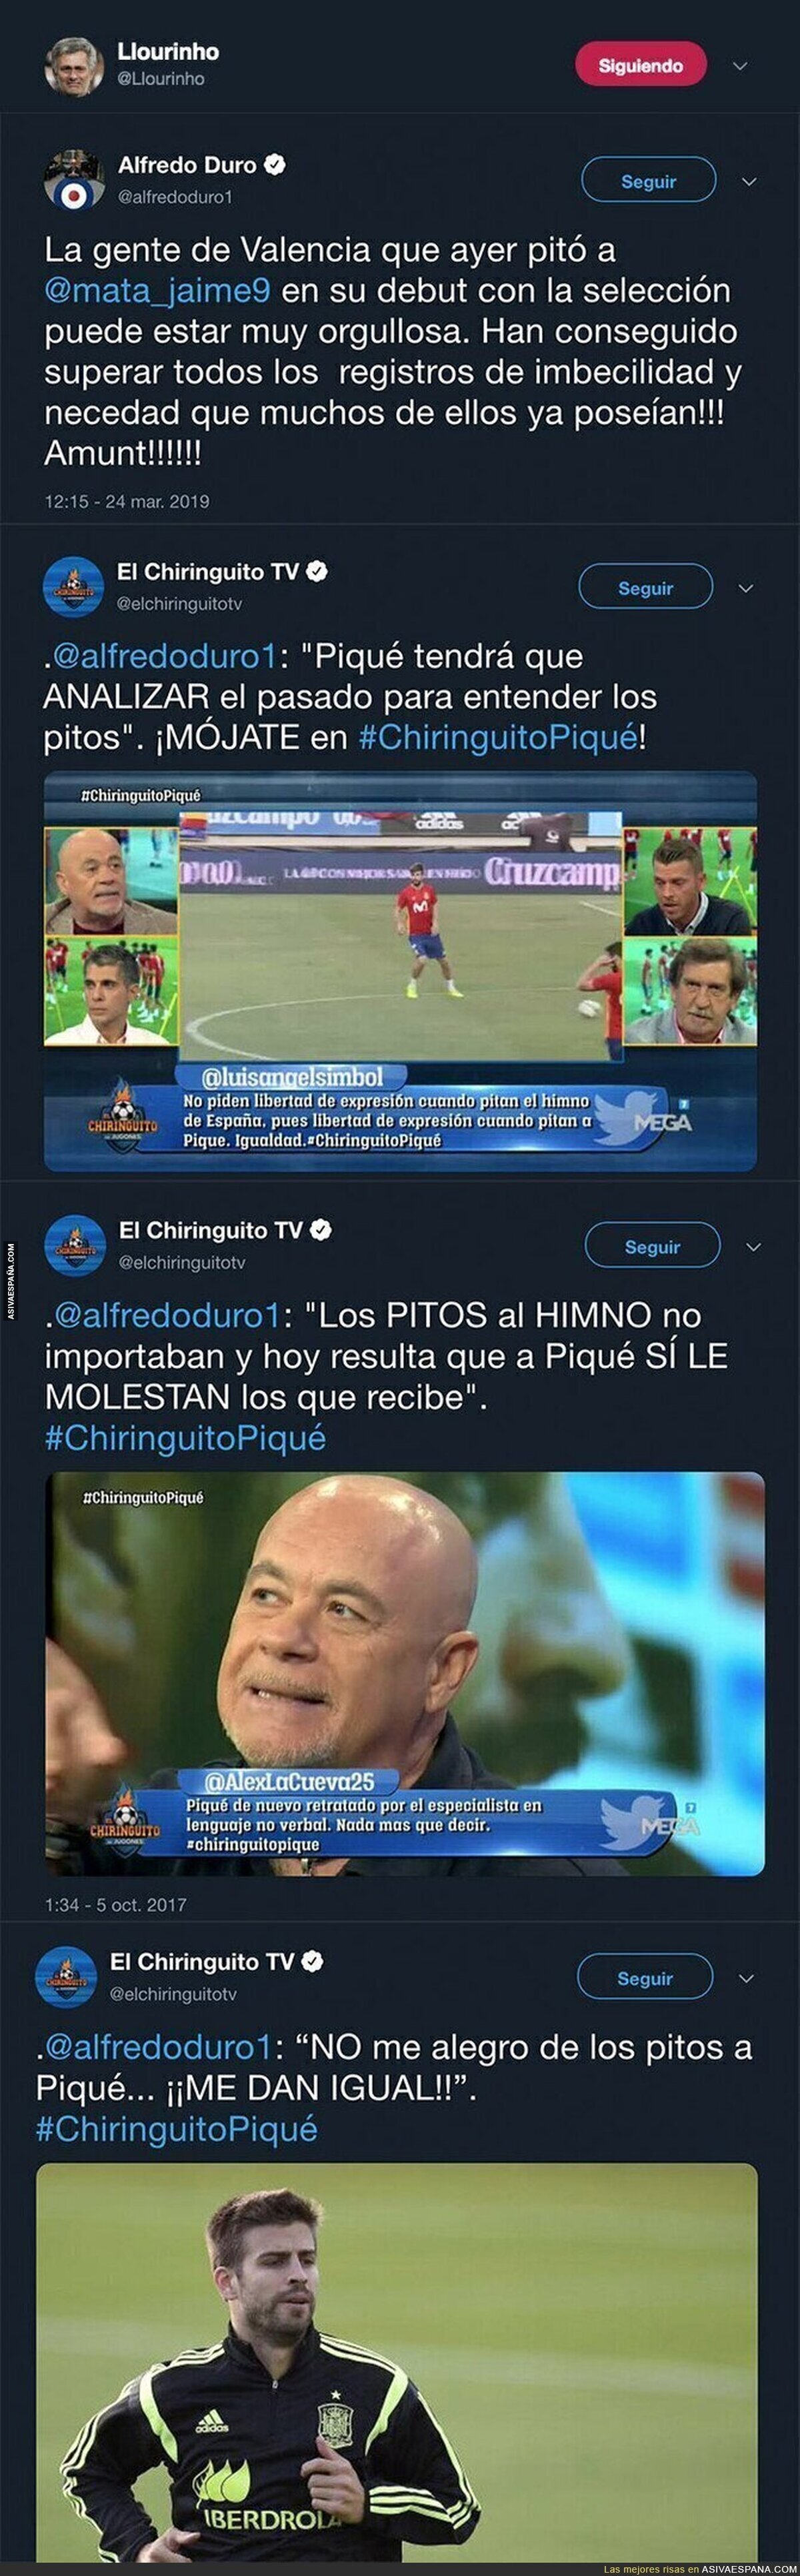 El doble rasero de Alfredo Duro a la hora de criticar cuando pitan a un jugador del Getafe con la selección y a Gerard Piqué